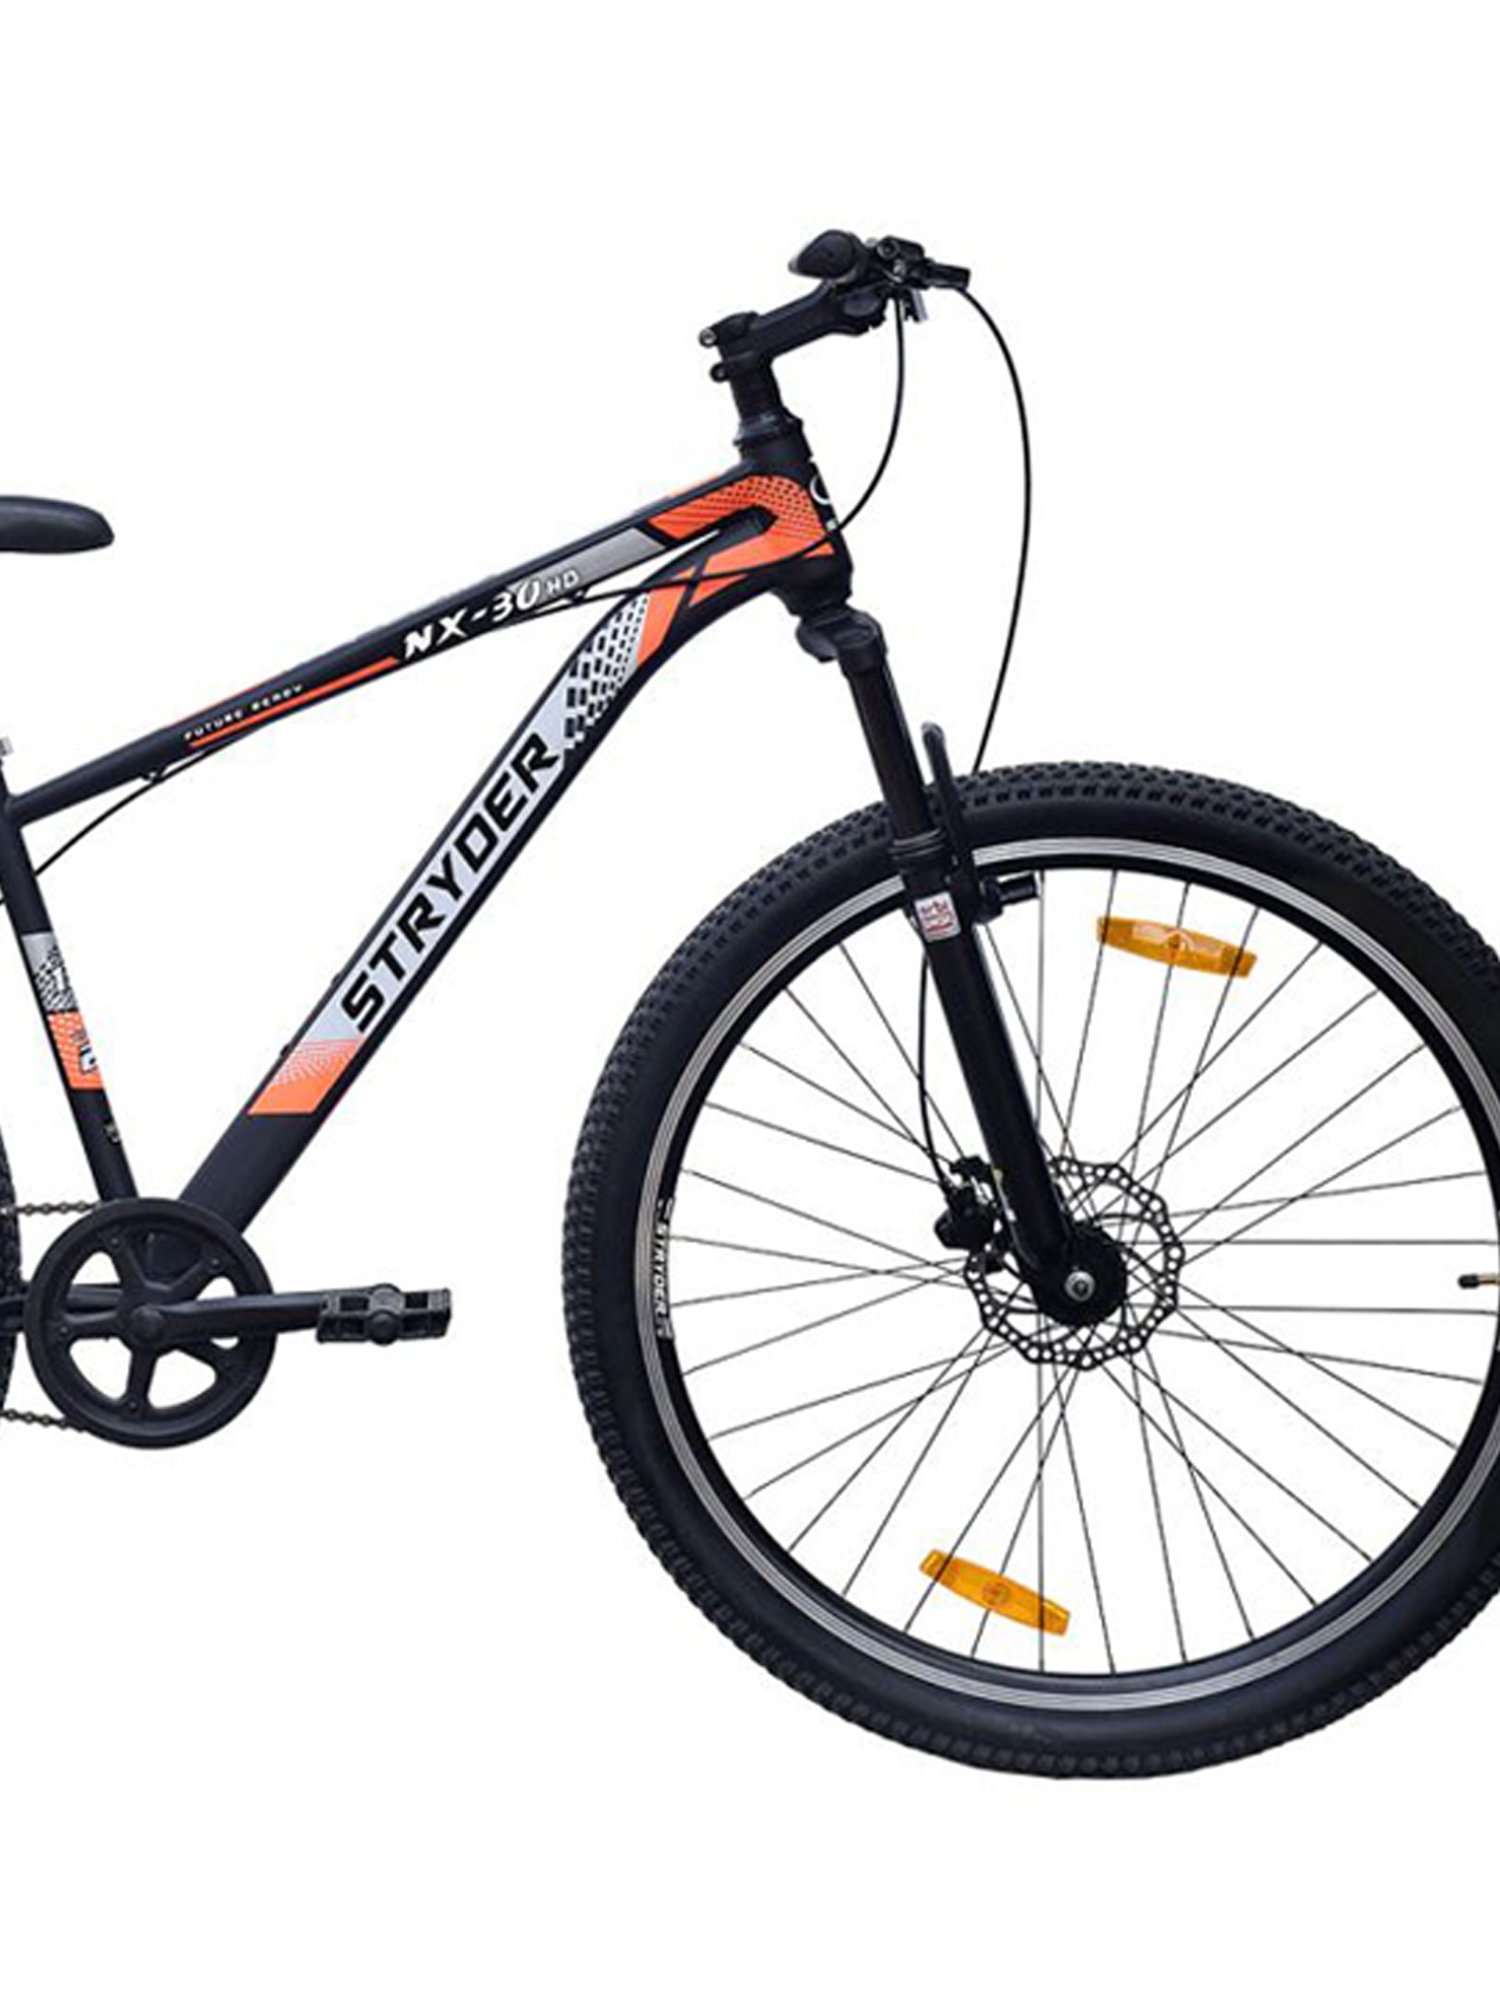 tata nx 30 cycle price